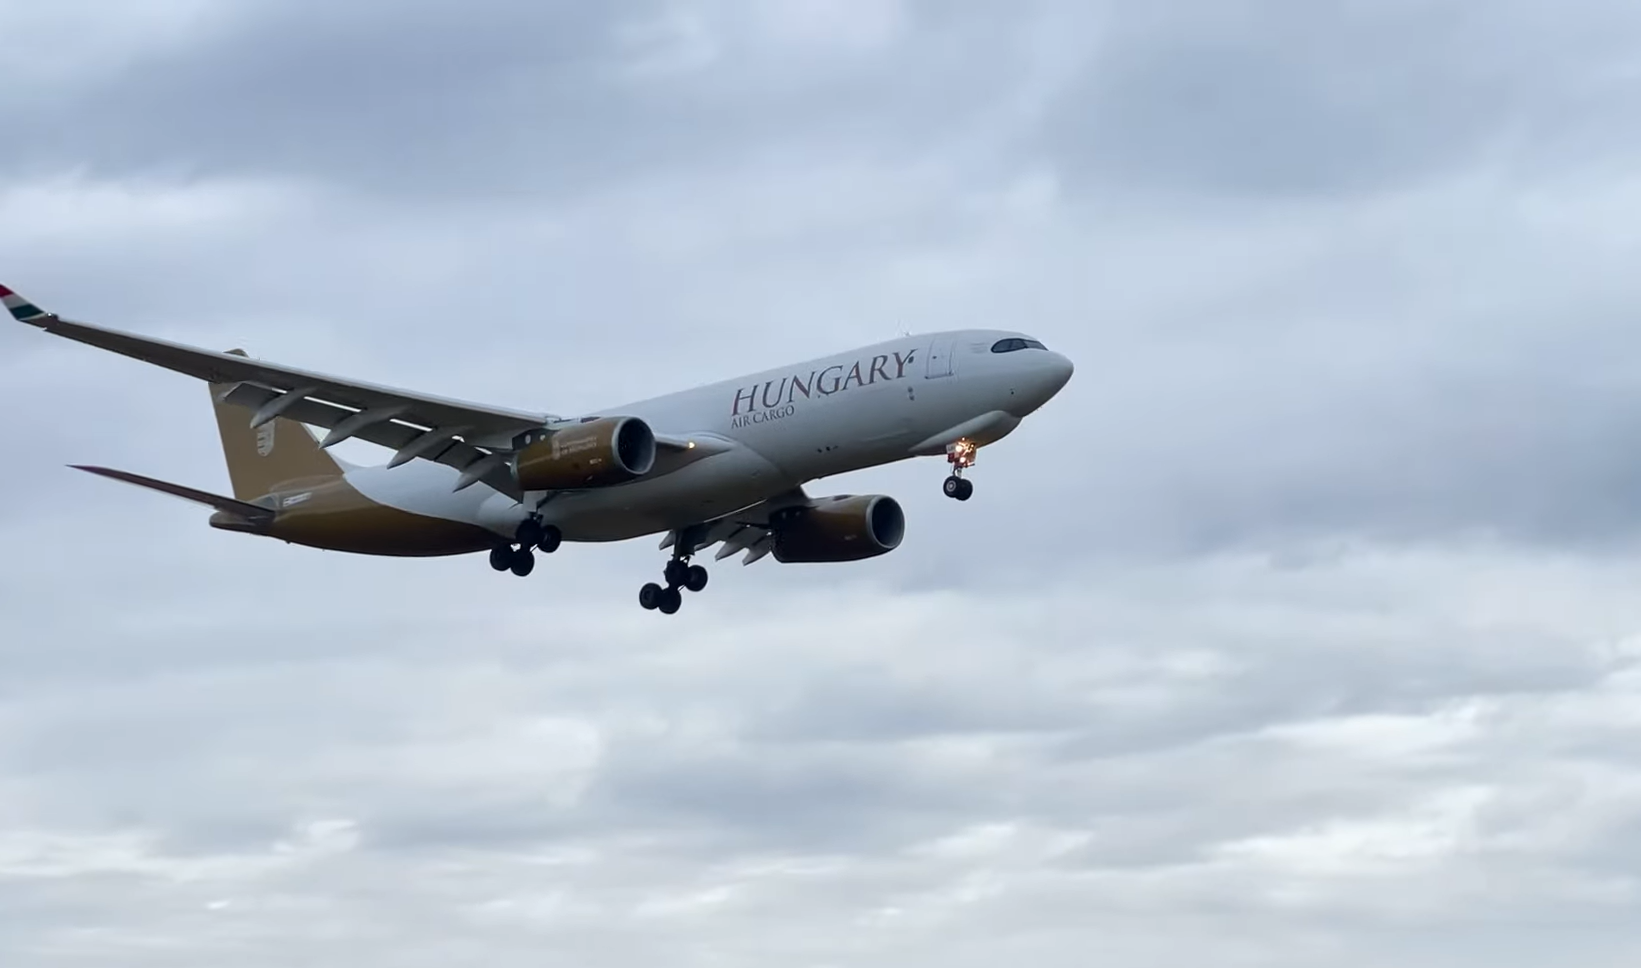 Staatliches ungarisches Transportflugzeug fliegt künftig nach Doha